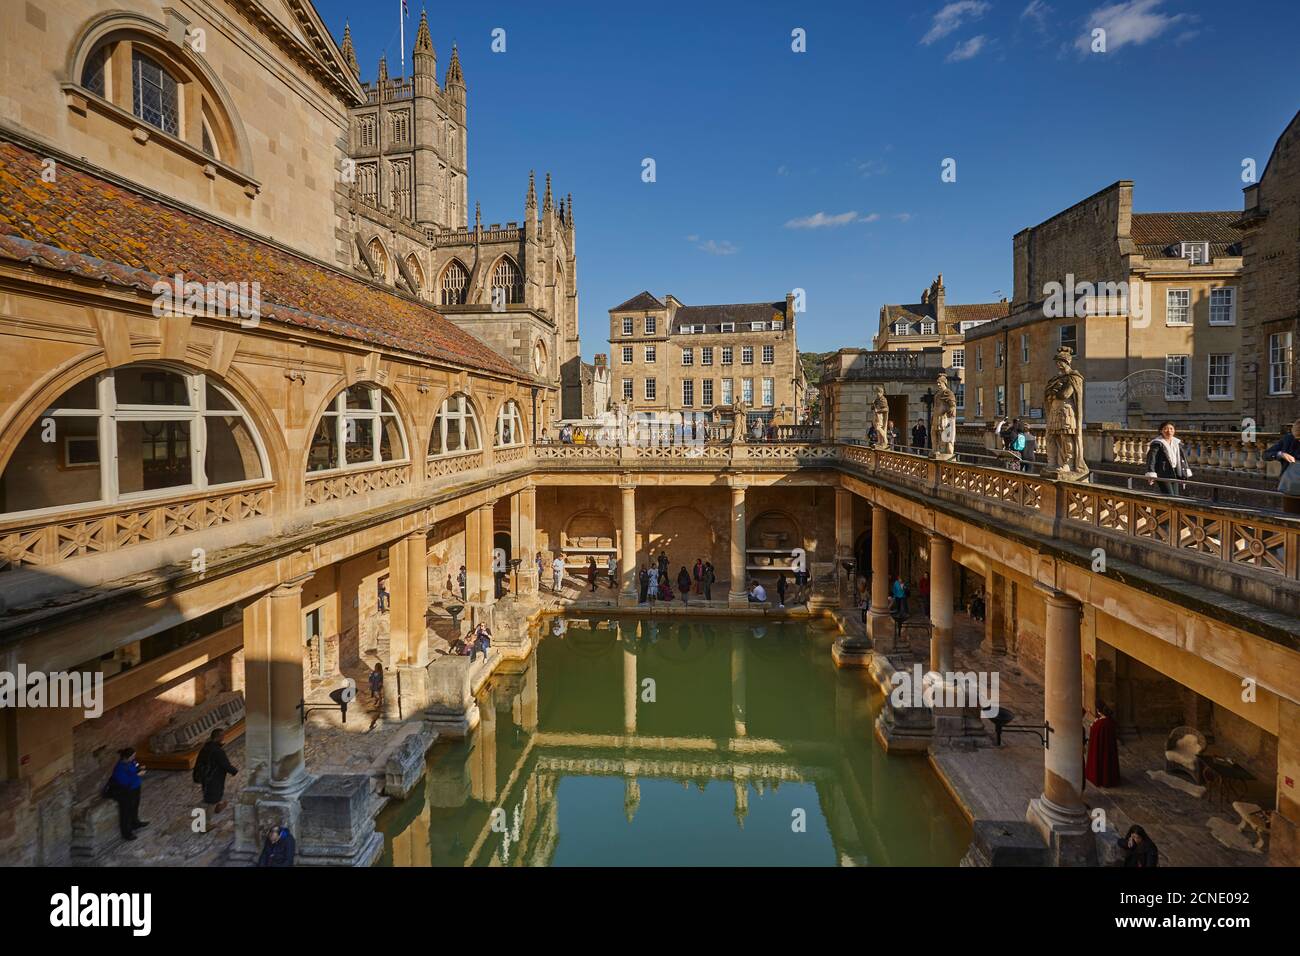 La piscine principale des bains romains, avec l'abbaye de Bath derrière, à Bath, site classé au patrimoine mondial de l'UNESCO, Somerset, Angleterre, Royaume-Uni, Europe Banque D'Images